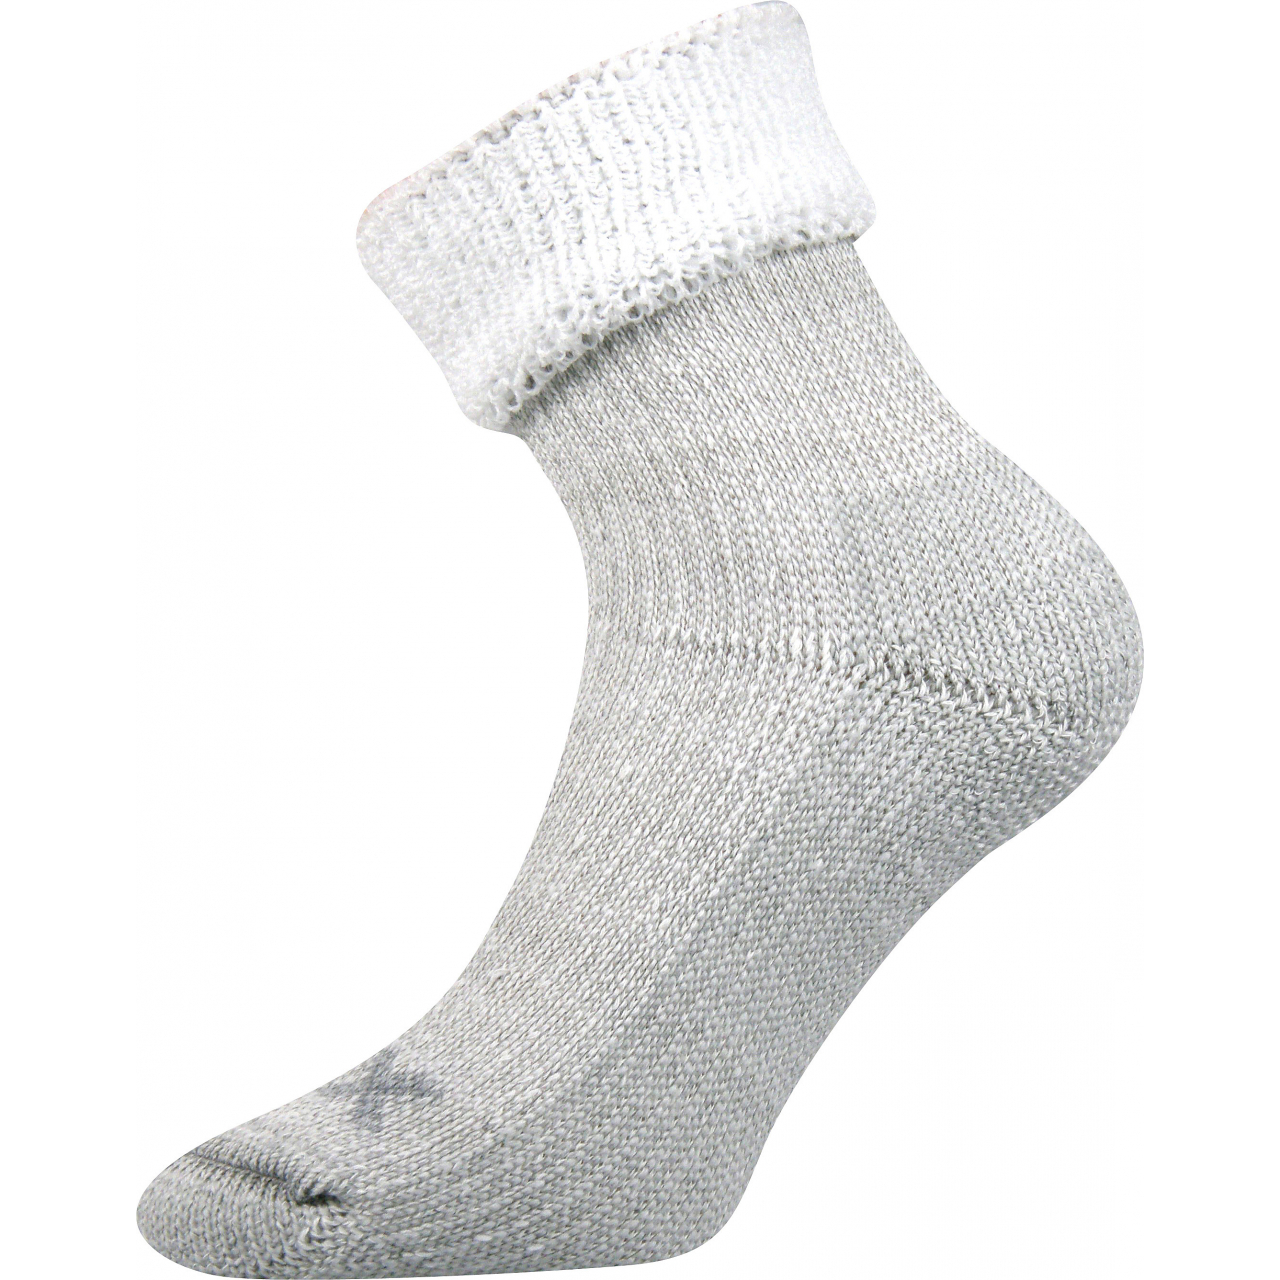 Ponožky dámské termo Voxx Quanta - šedé-bílé, 35-38